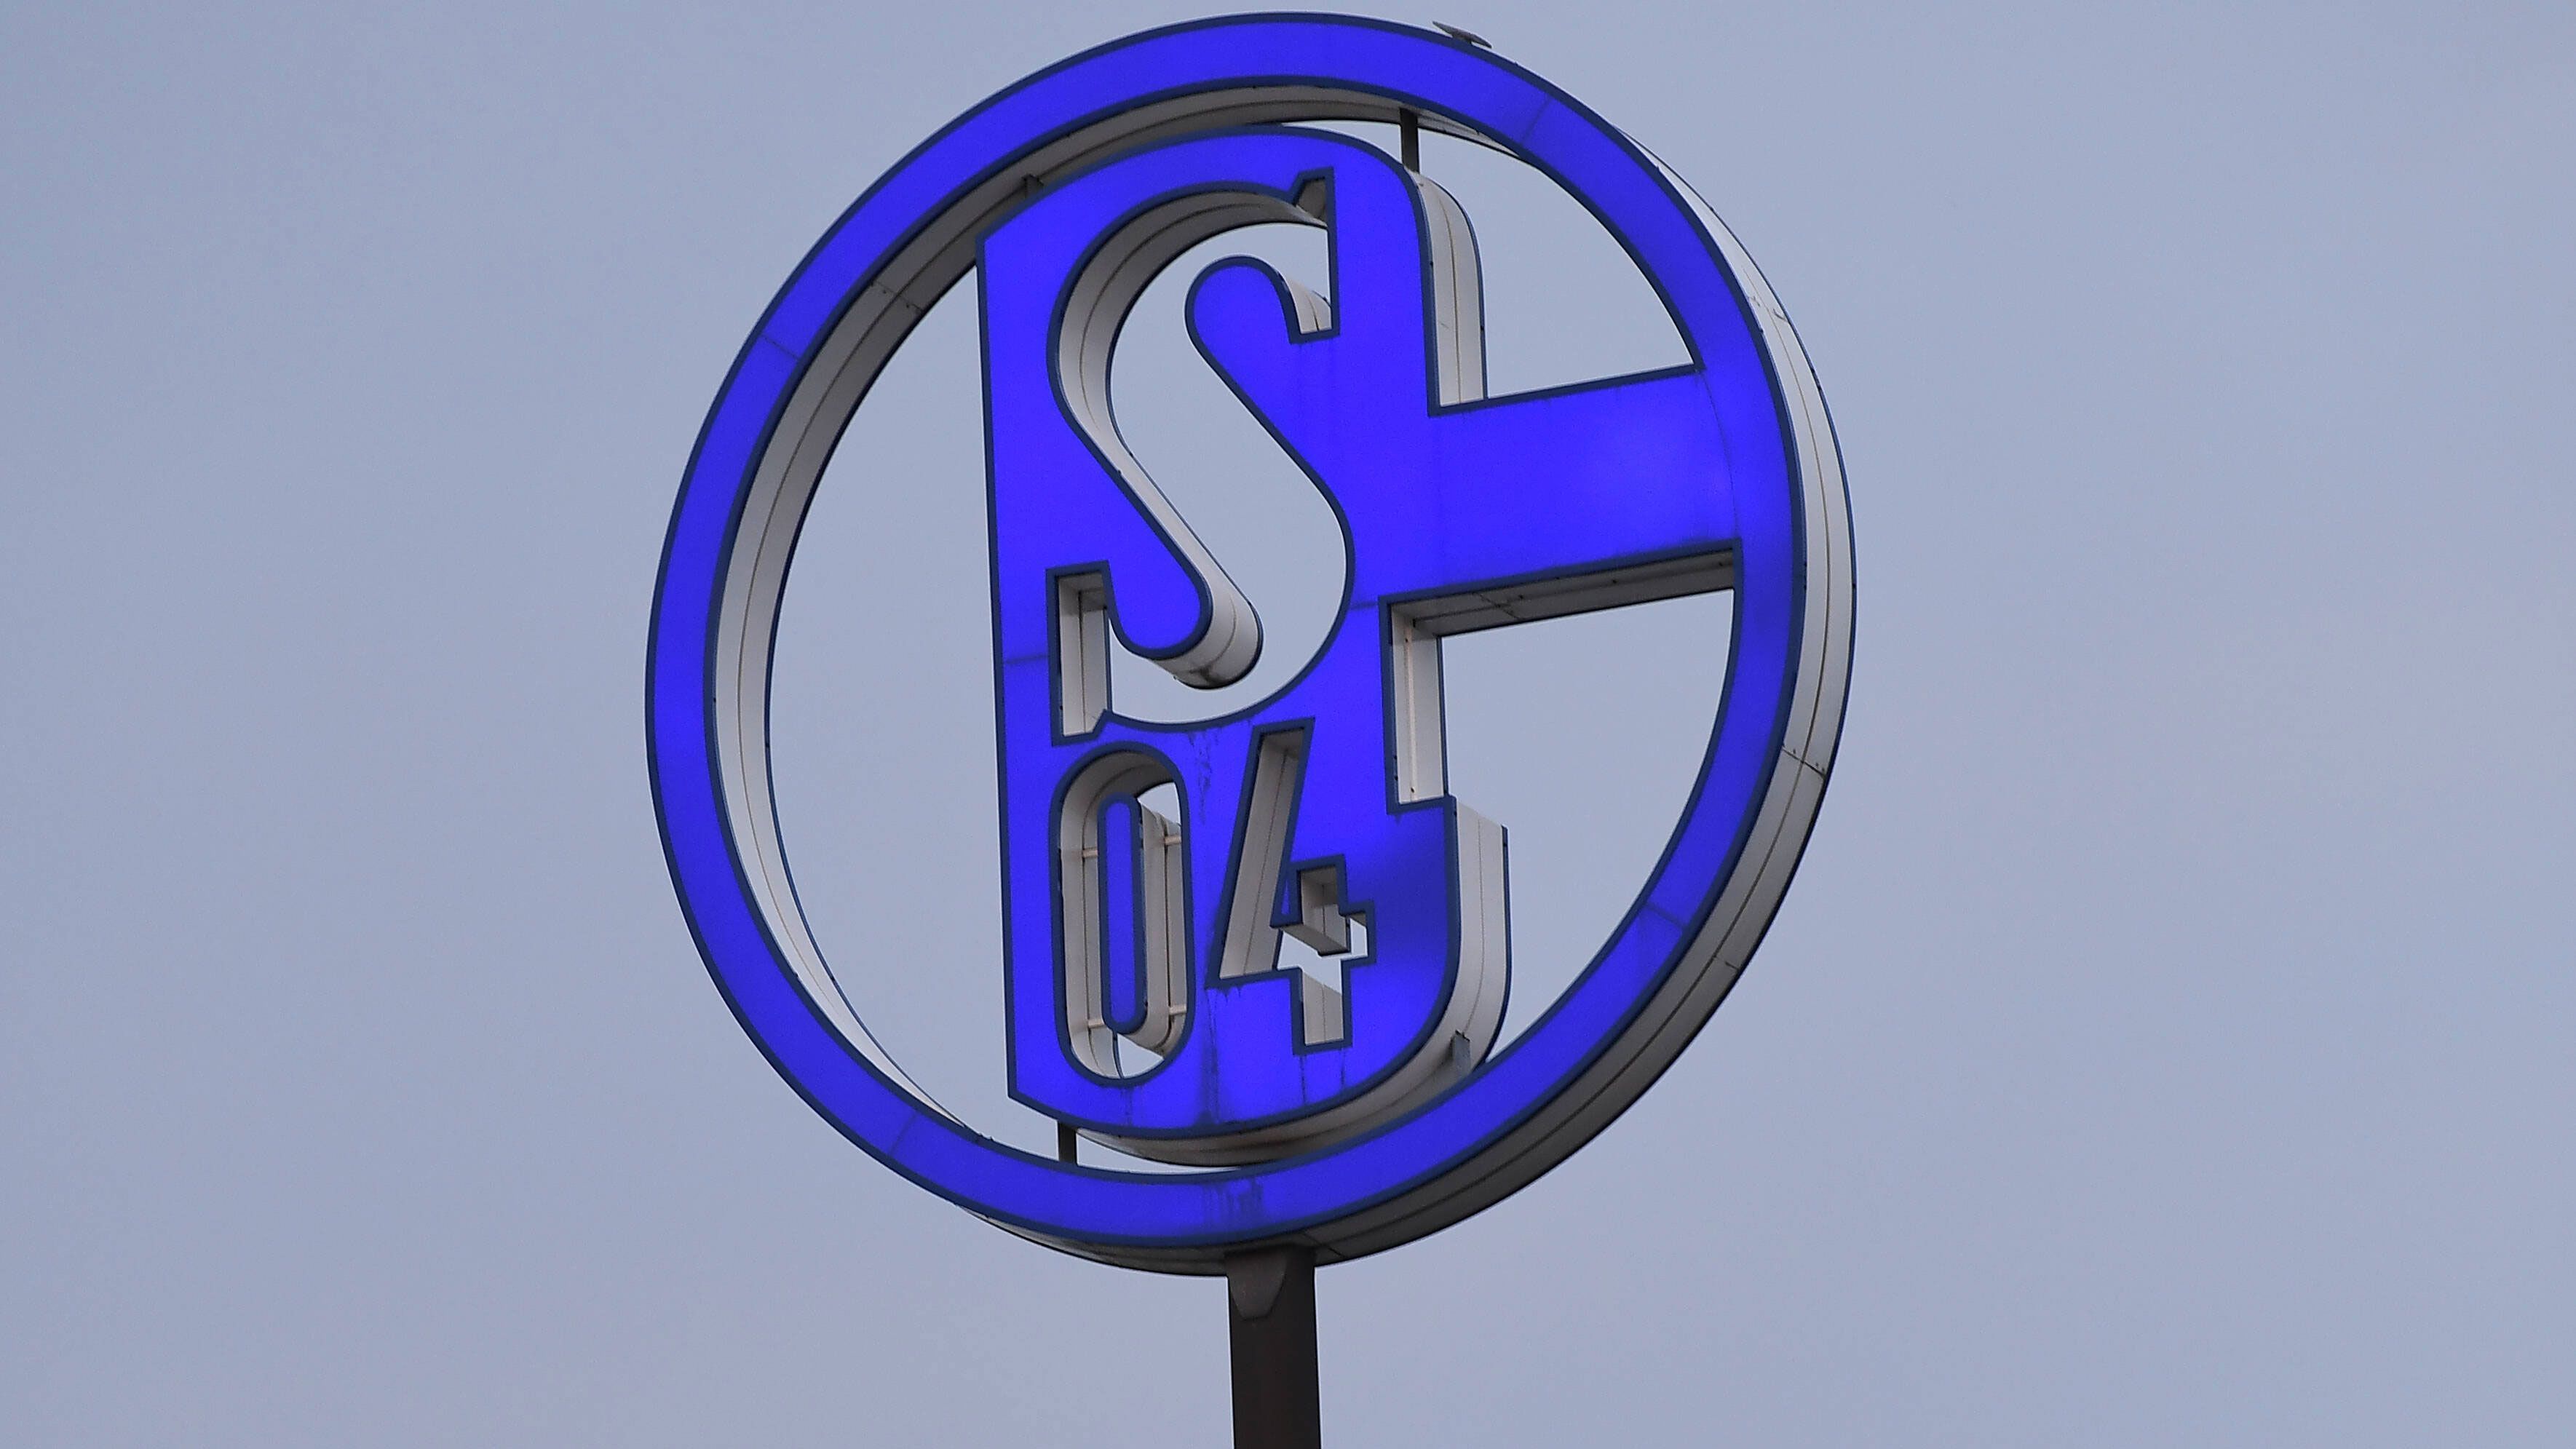 
                <strong>Platz 10 (geteilt): FC Schalke 04</strong><br>
                Gesamtpunktzahl: 33,5 -Facebook: 8,5 Punkte, Instagram: 8 Punkte, YouTube: 9 Punkte, Twitter: 8 Punkte -Sie waren in unserem Bundesliga-Rückblick der "Absturz der Saison" und sind es auch im digitalen Bereich. Absteiger Schalke verliert ganze 16,5 Punkte im Vergleich zu letztem Jahr und ist anstatt Vizemeister nur noch Mittelmaß.
              